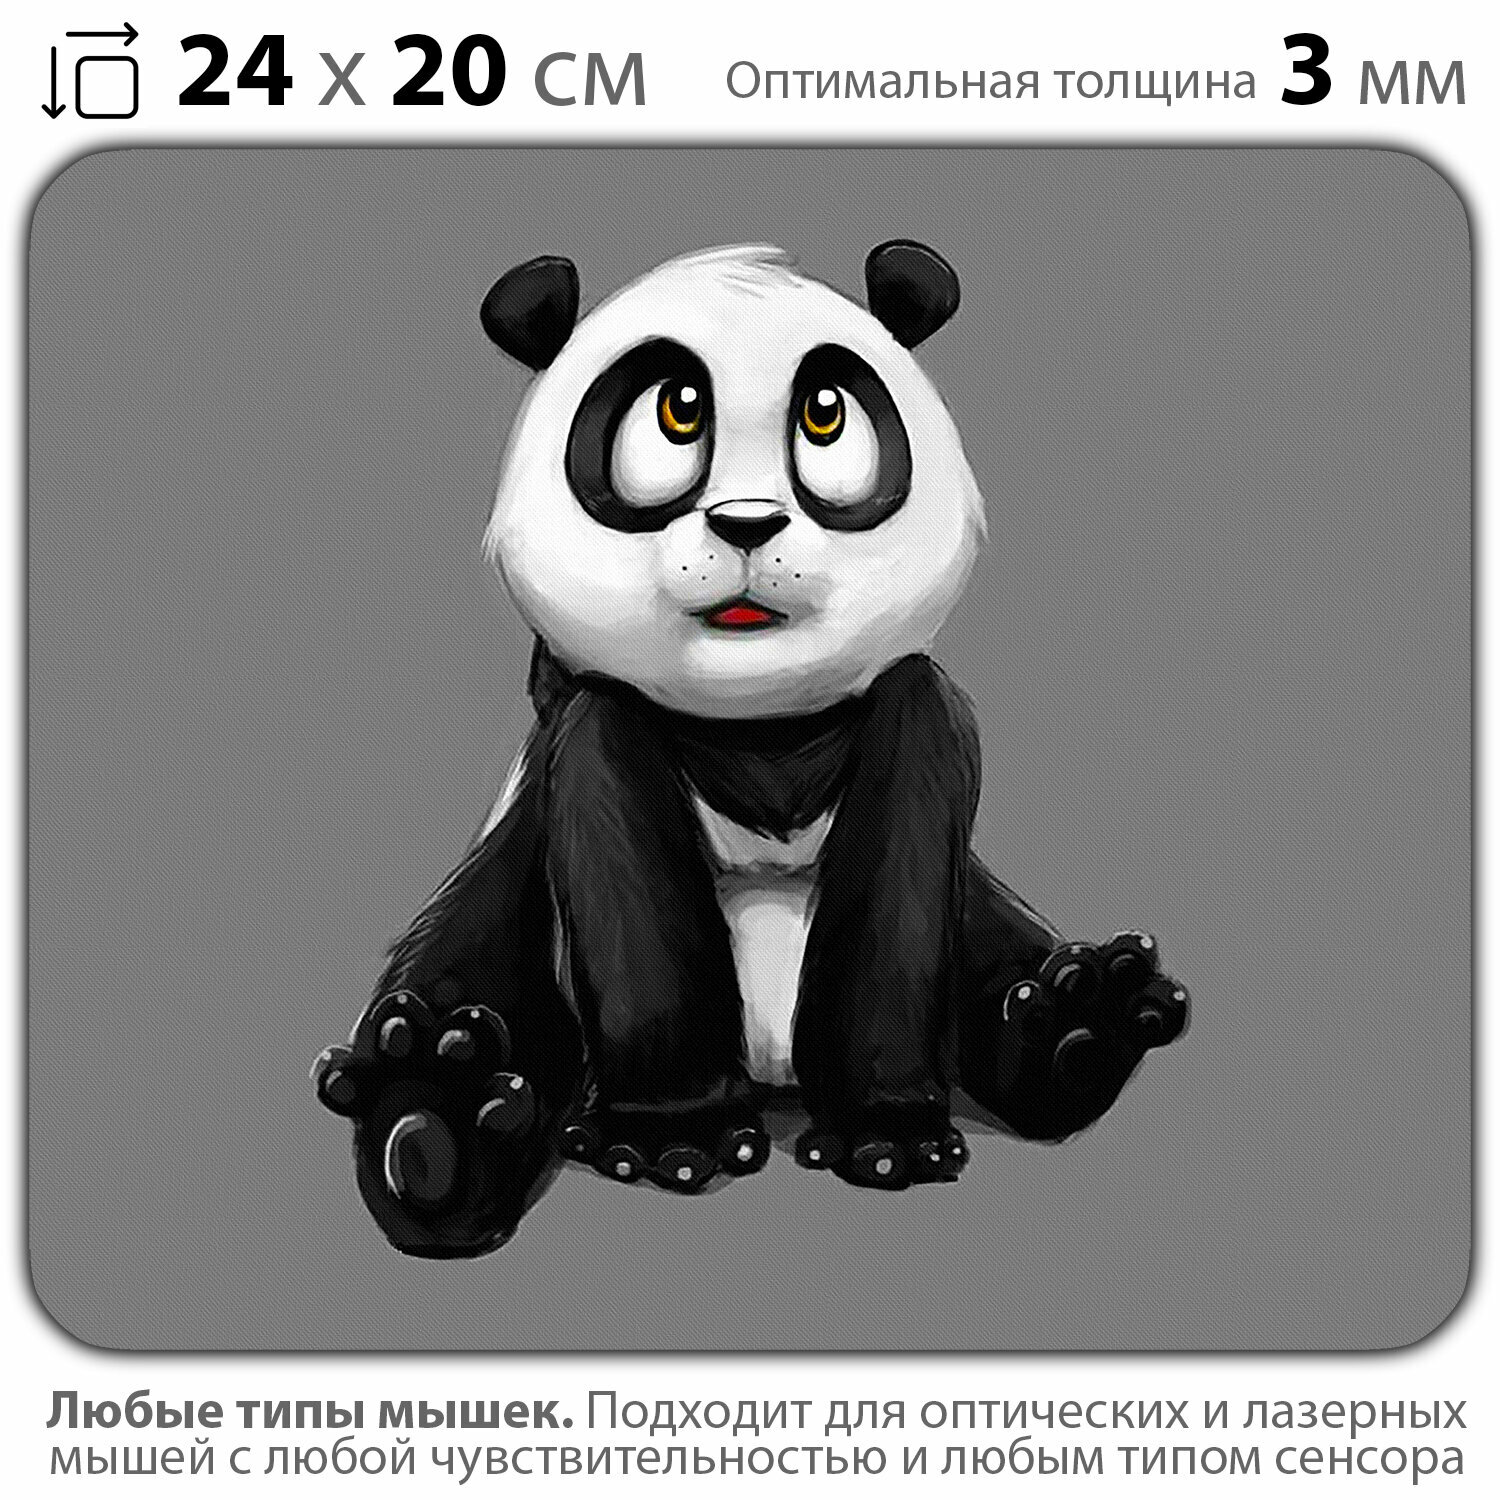 Коврик для мыши "Детёныш панды" (24 x 20 см x 3 мм)